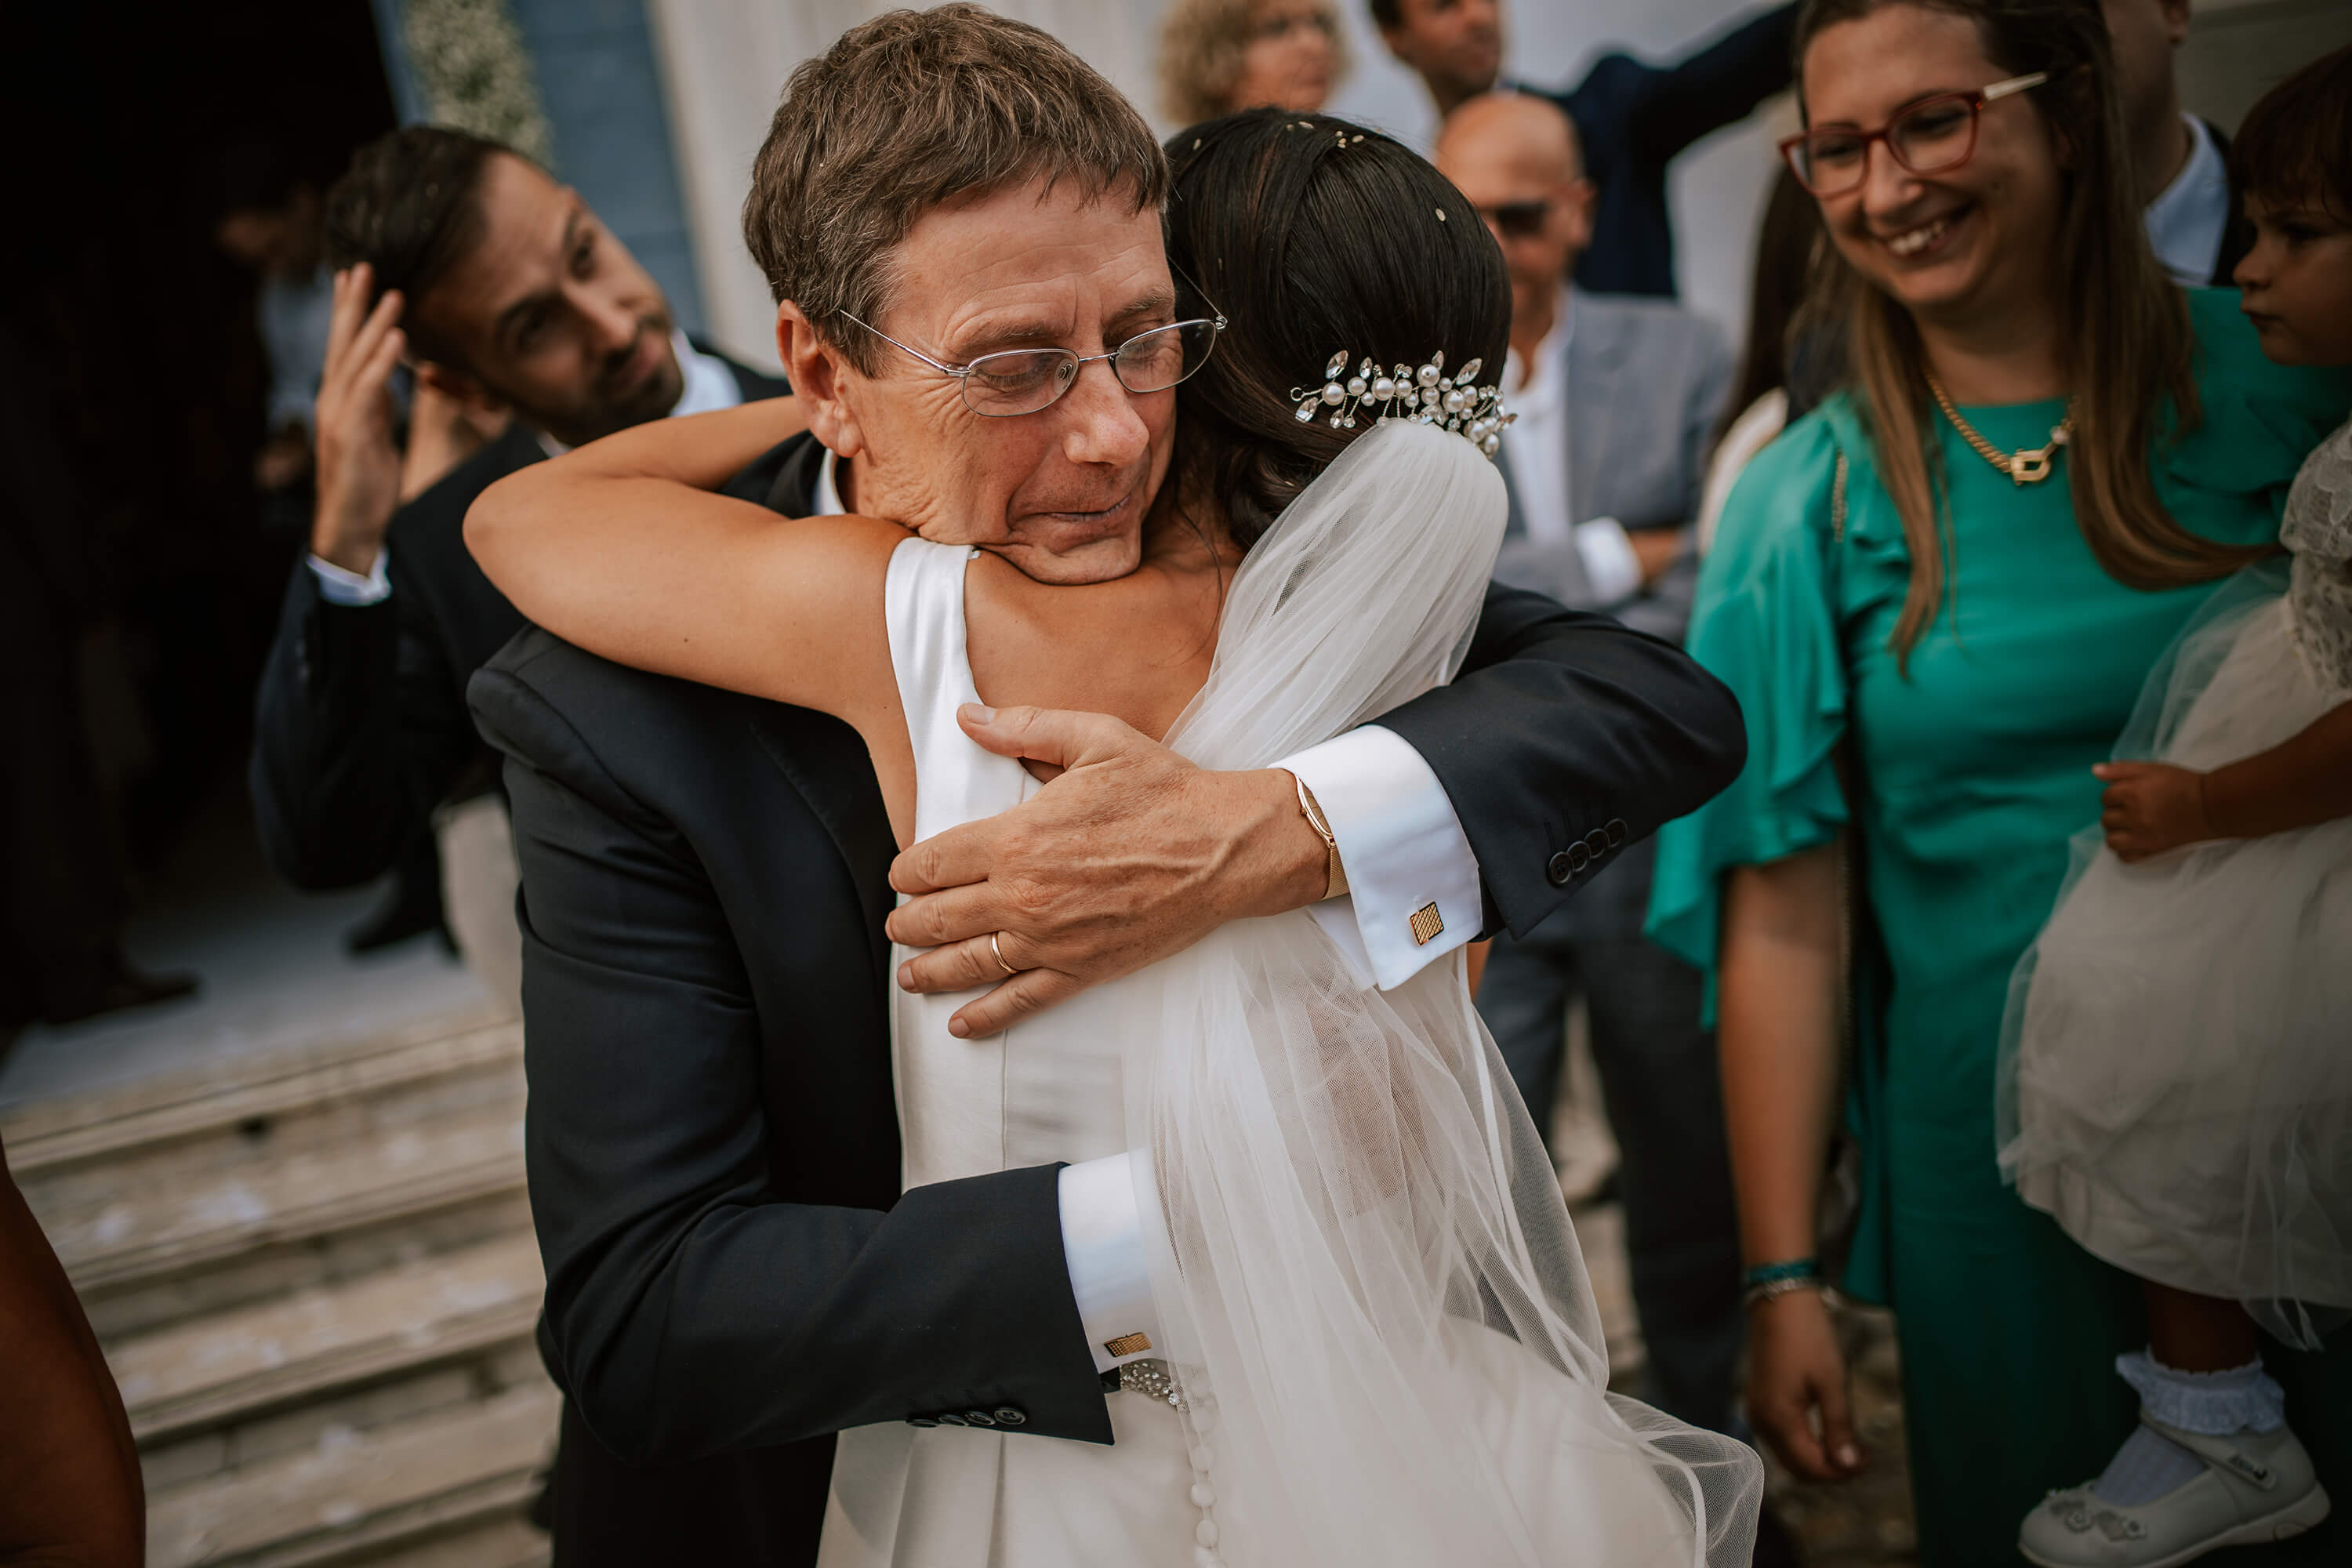 Una foto dell'abbraccio alla sposa dopo la cerimonia alla Madonna della Costa a Sanremo.